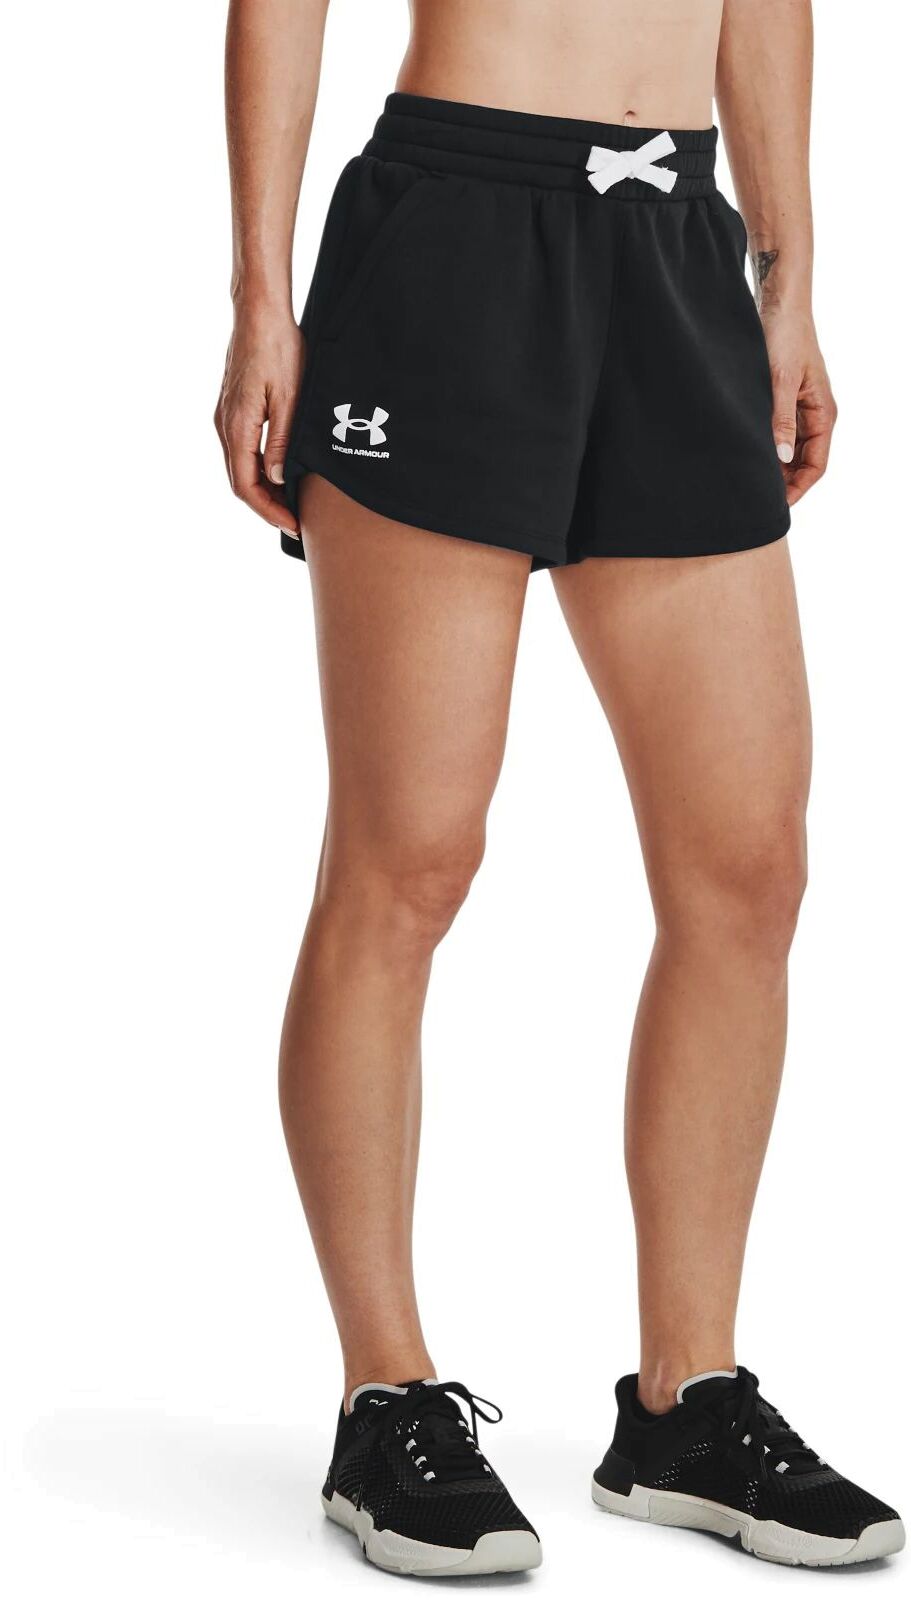 Cпортивные шорты женские Under Armour 1376257-001 черные XL